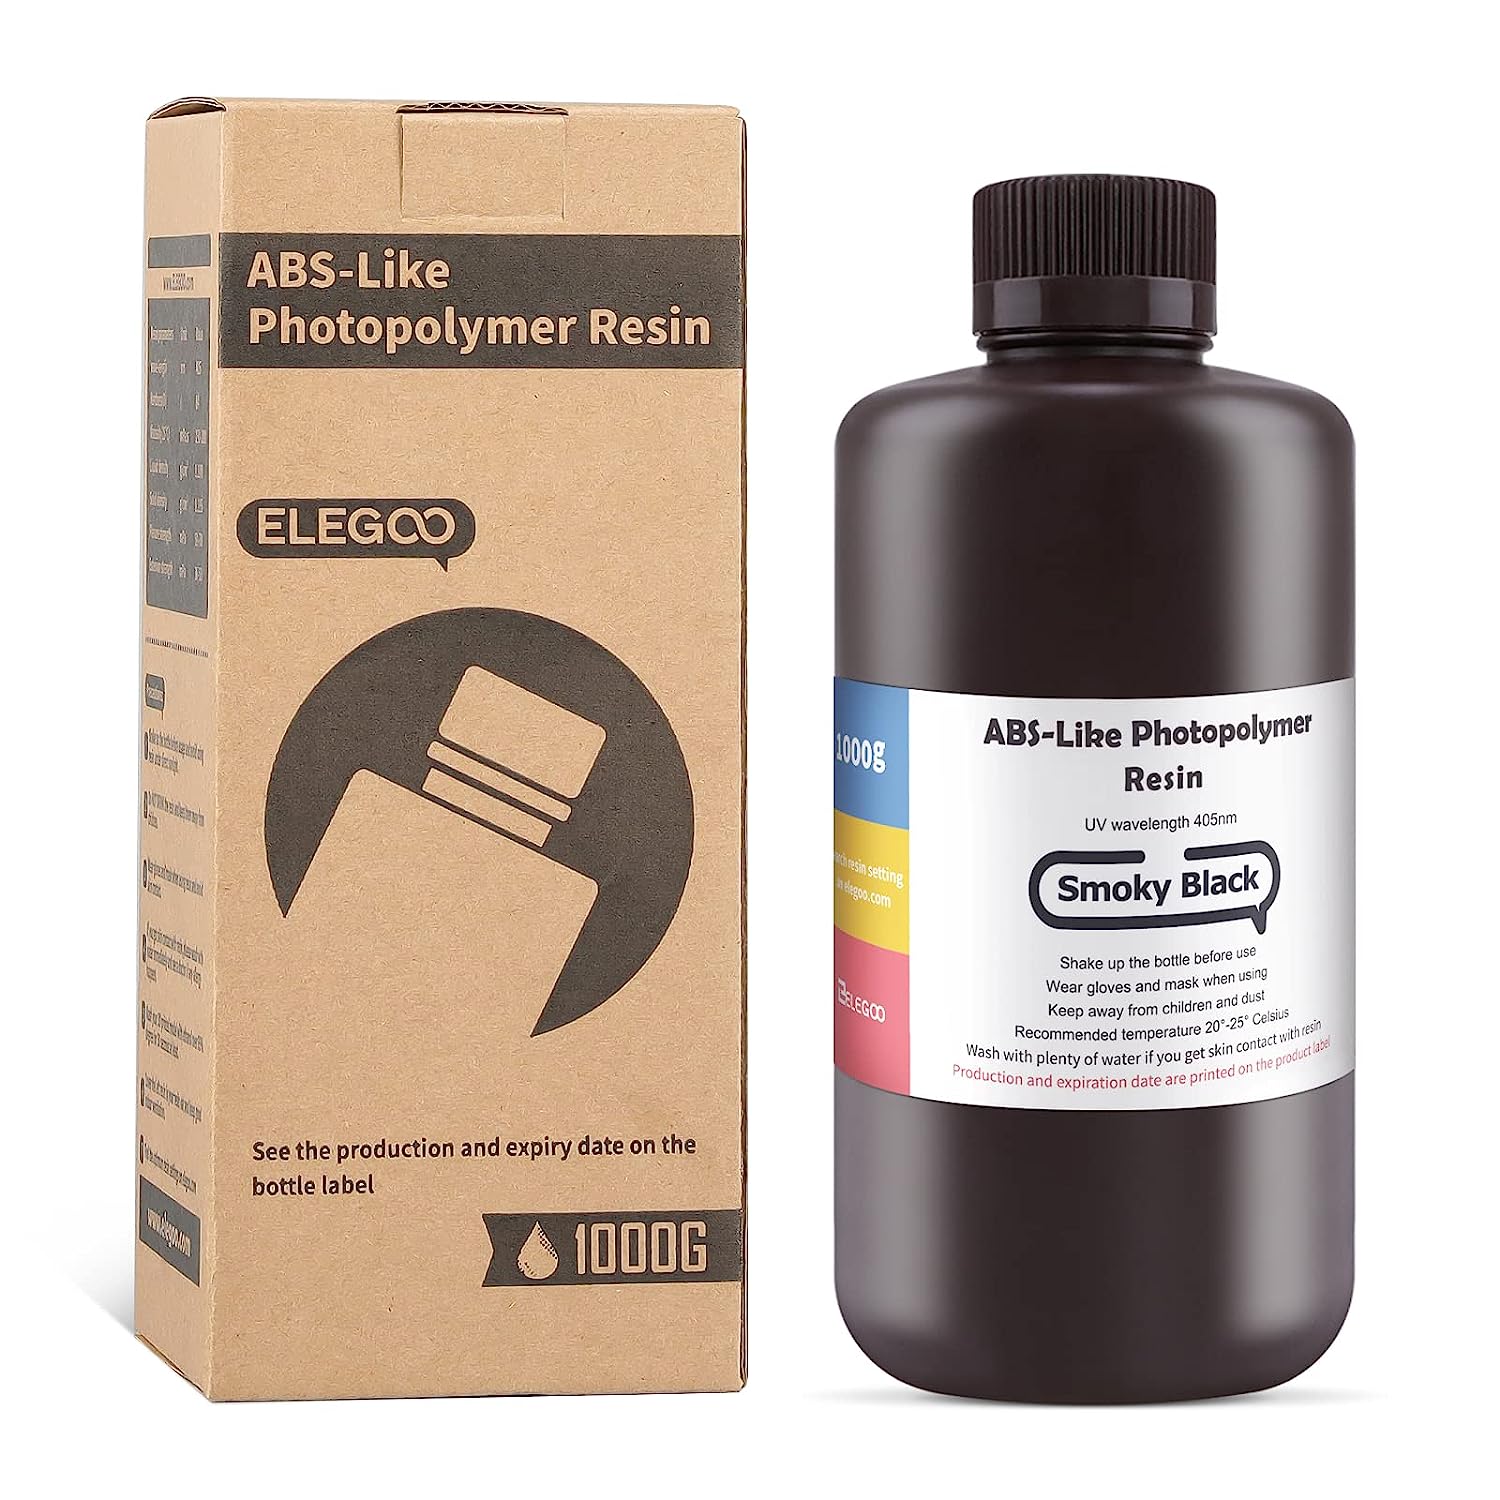 ELEGOO ABS-Like Photopolymer 3D Printer Resin for LCD DLP